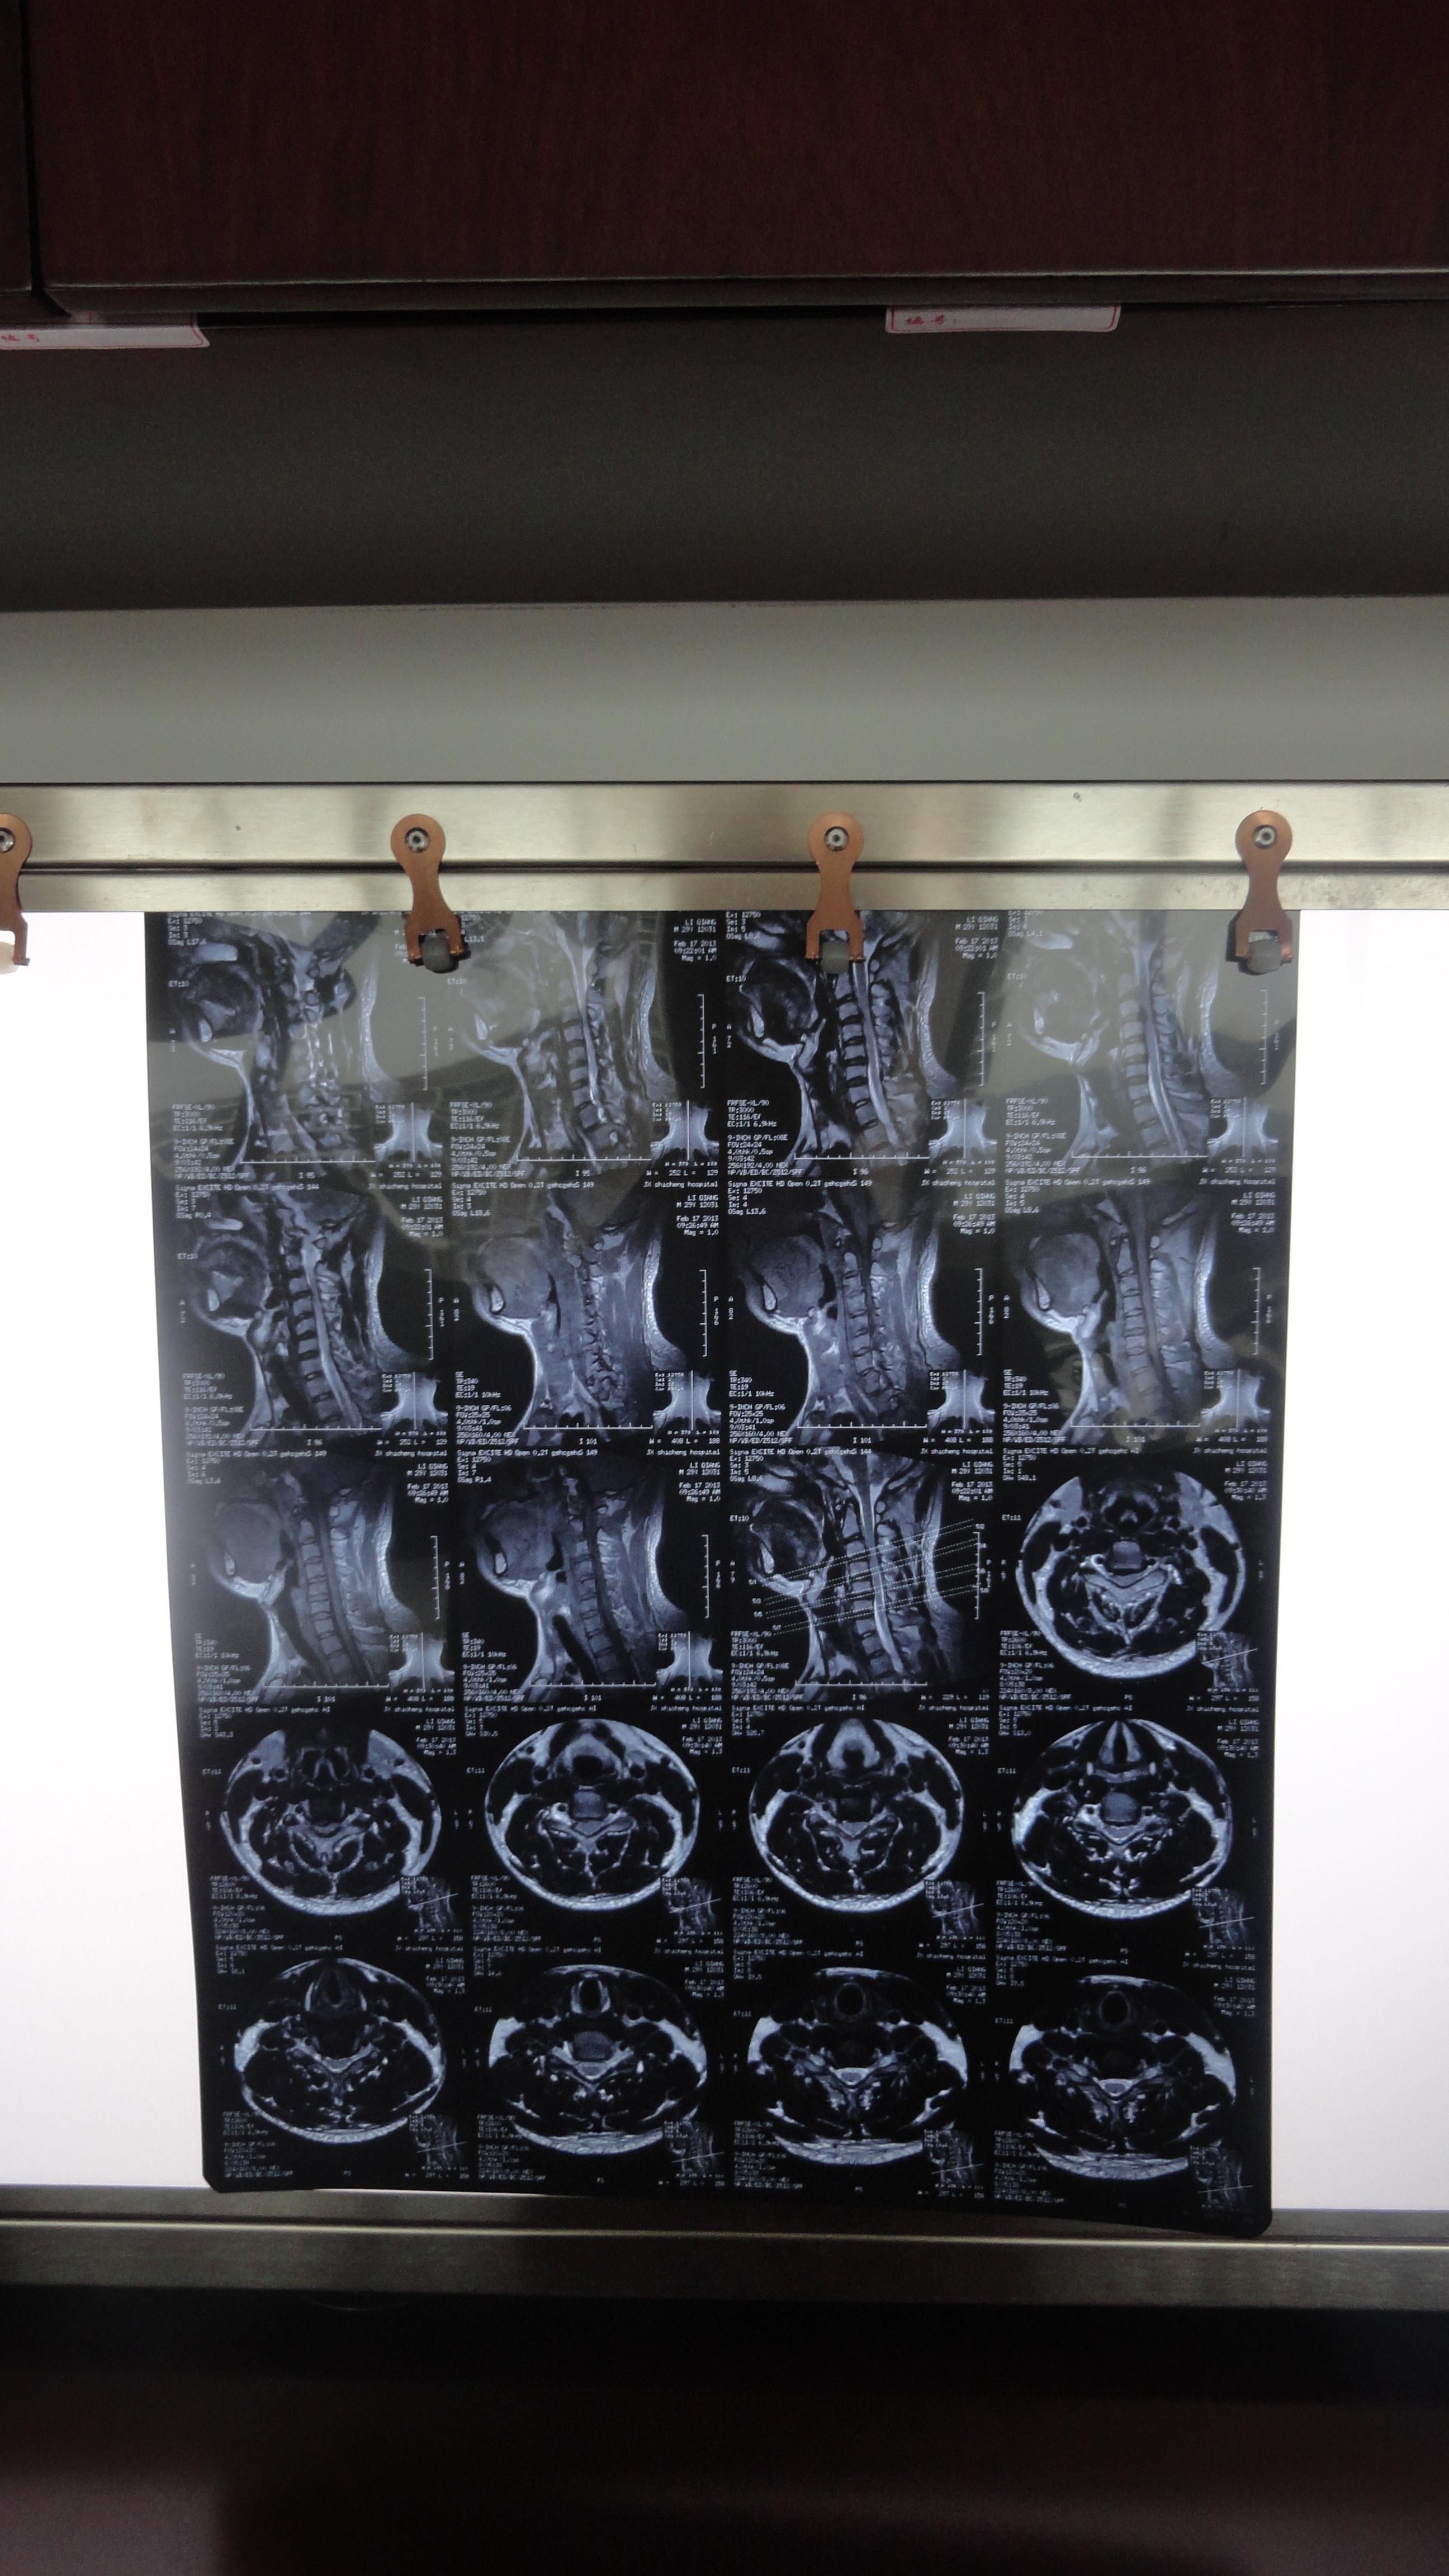 脊髓型颈椎病核磁图片图片